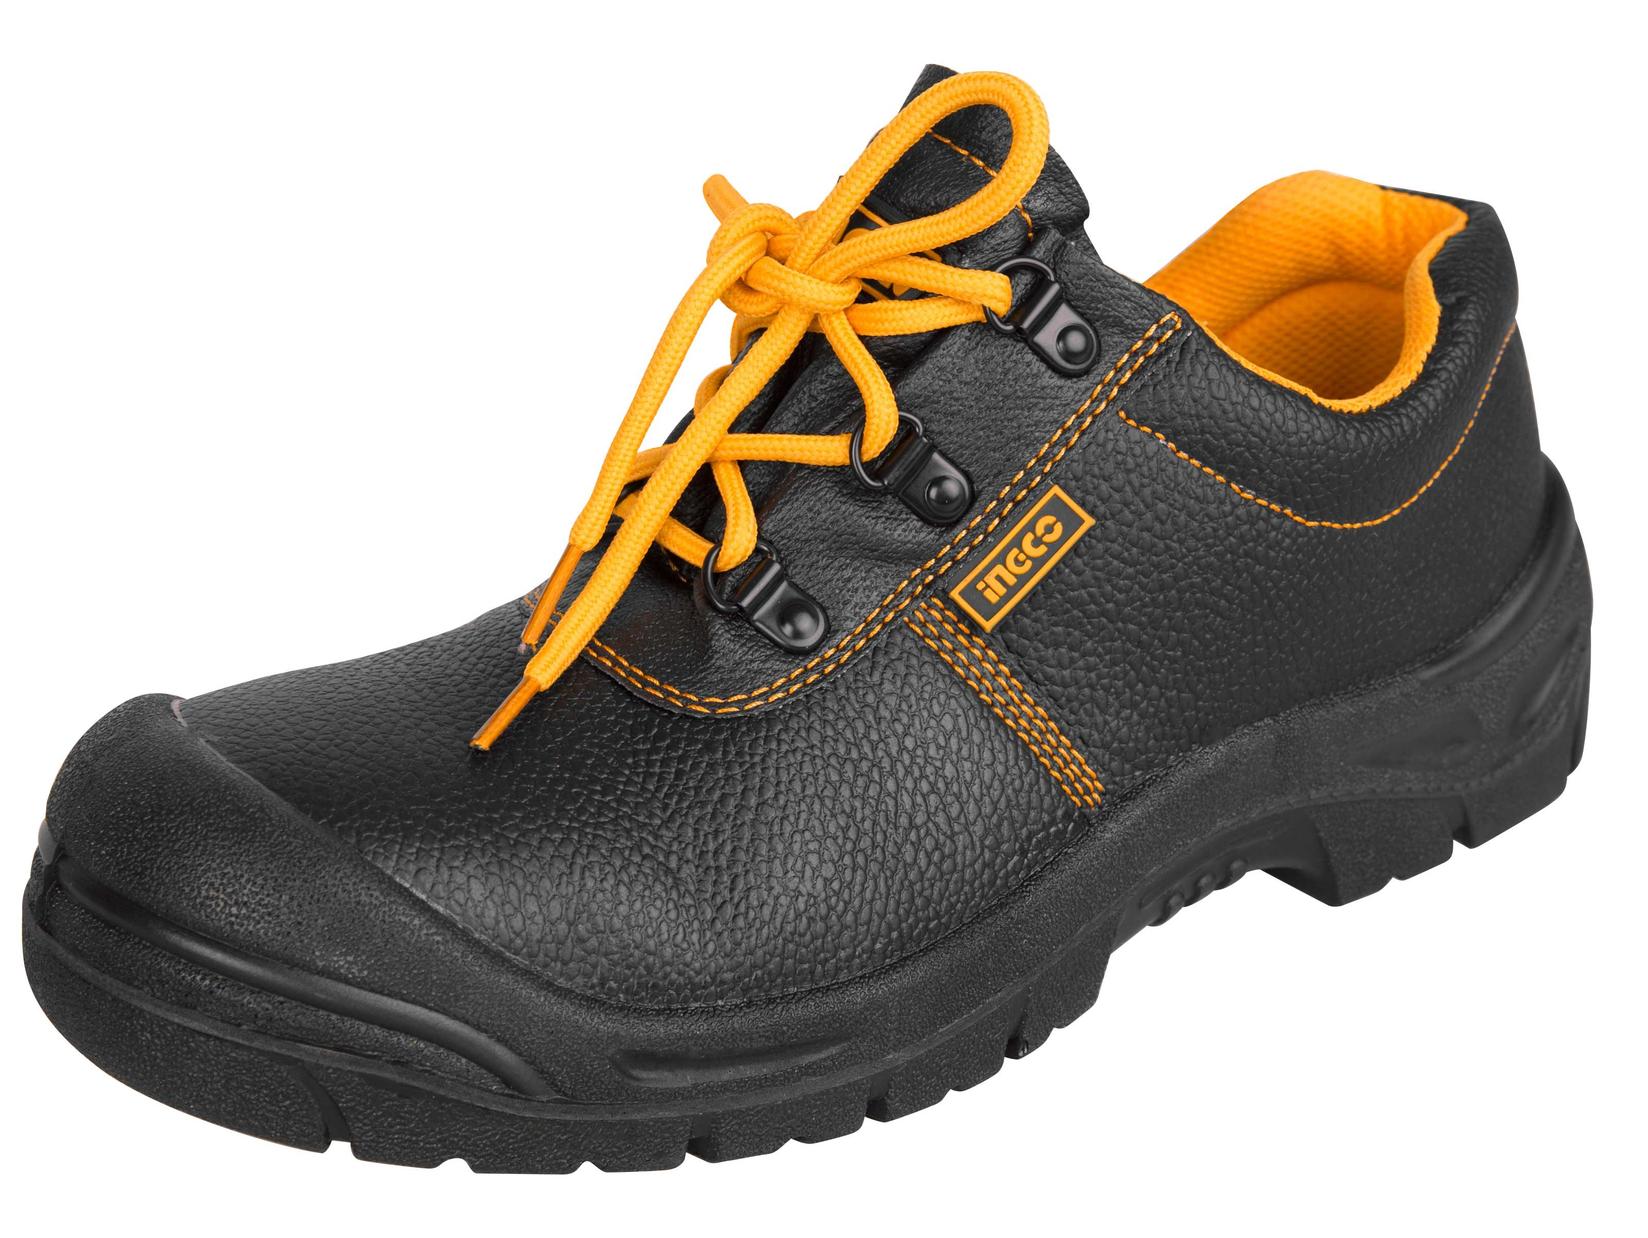 INGCO Zaštitne cipele plitke 44 crne